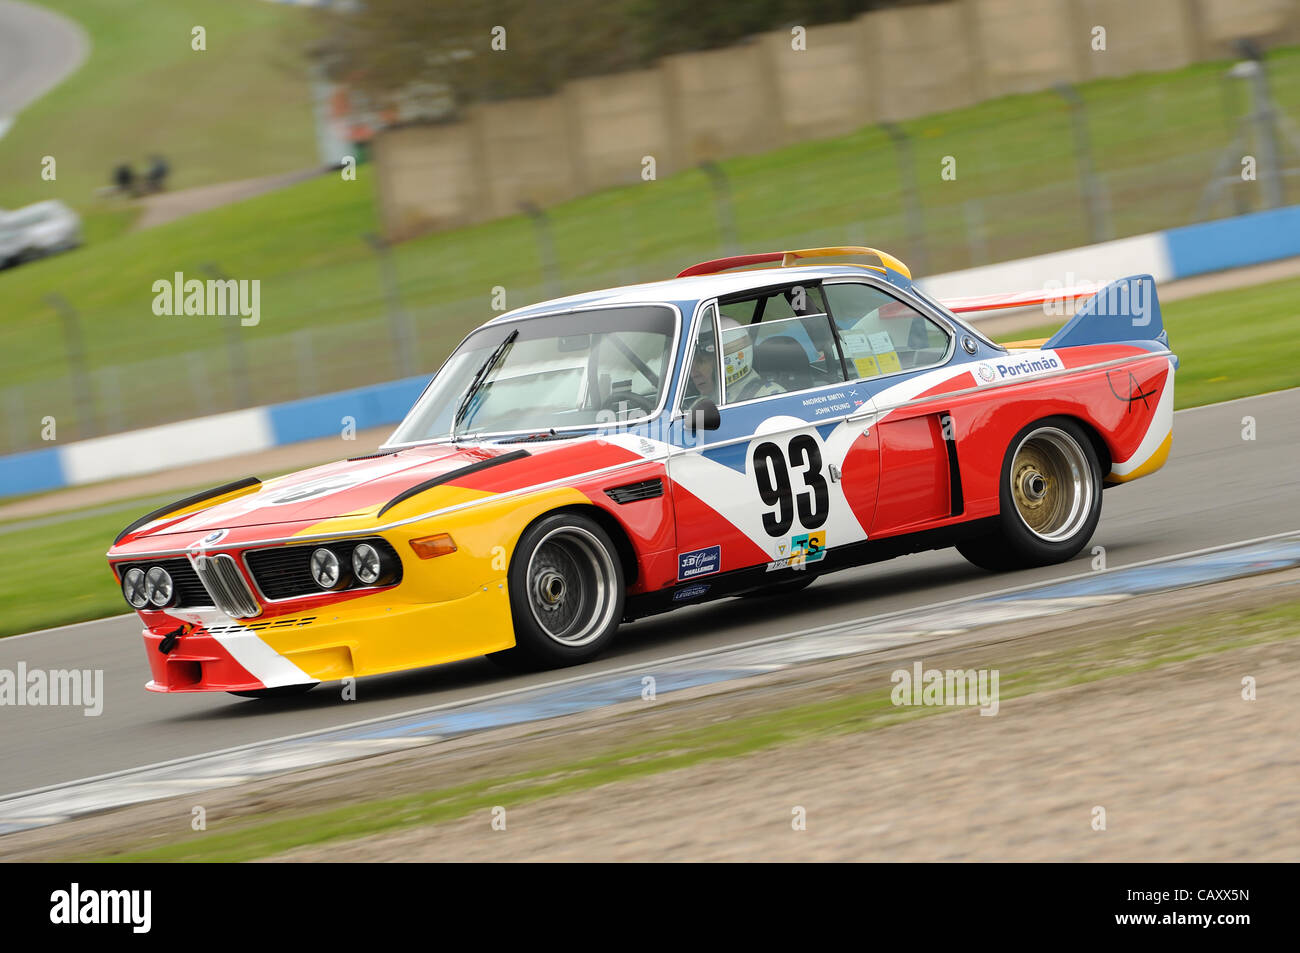 5 mai 2012, le circuit de course de Donington Park, Royaume-Uni. La BMW 3.0 CSL de Andrew Smith et John Young au Donington Festival Historique Banque D'Images